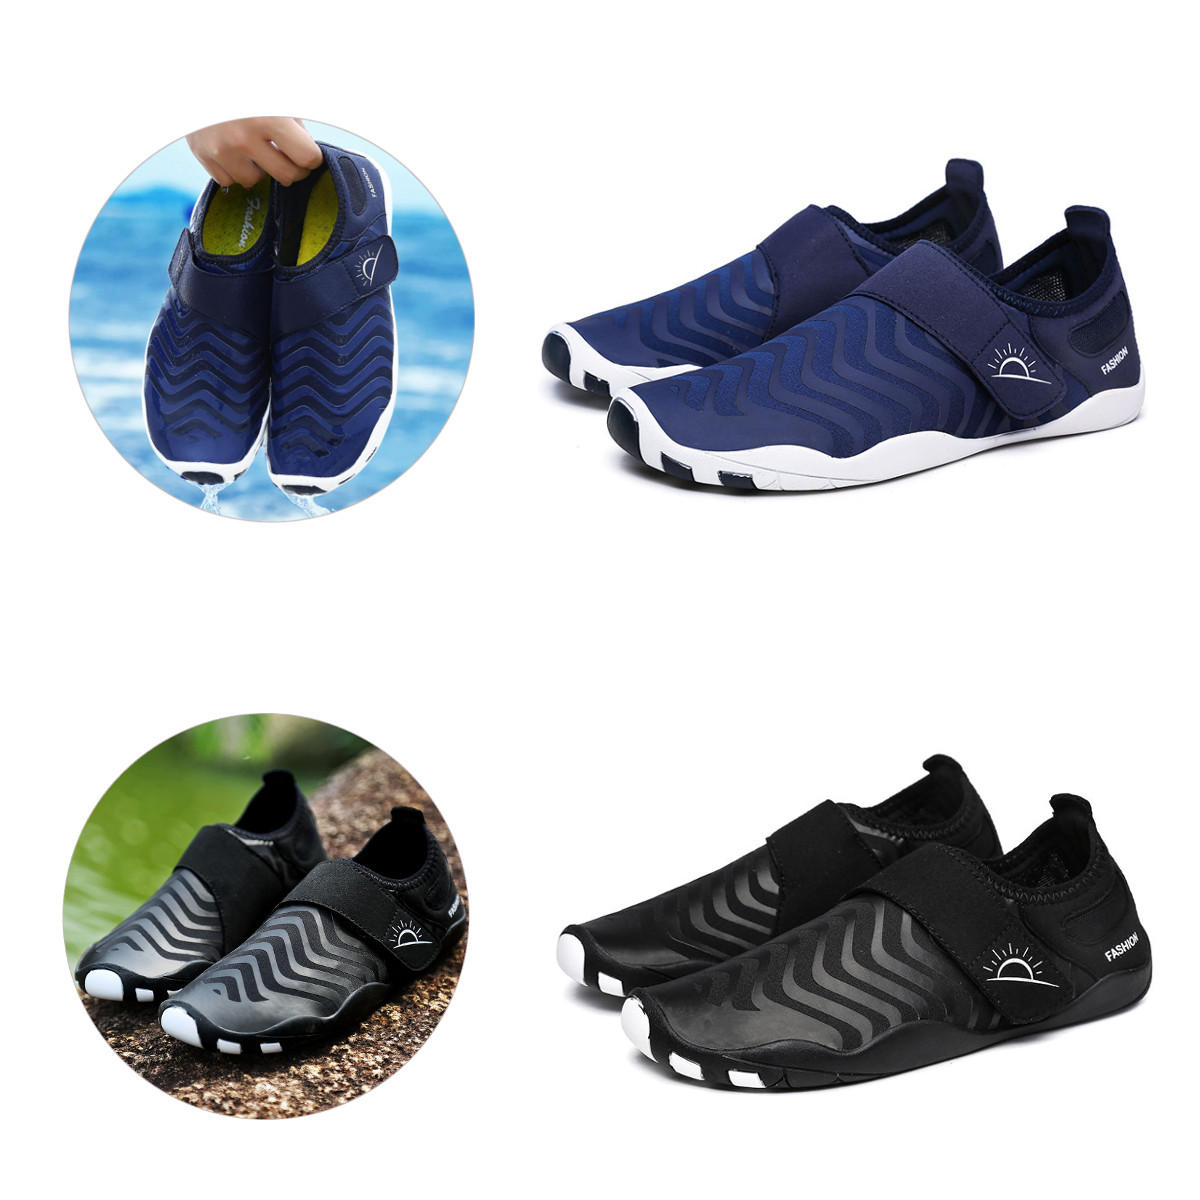 รองเท้าเดินป่าเบาสไตล์ลายทางเร็ว สะดวกในการสวมใส่ หลากหลายสี ใช้ได้ทั้งกีฬากลางแจ้ง ว่ายน้ำ และโยคะ